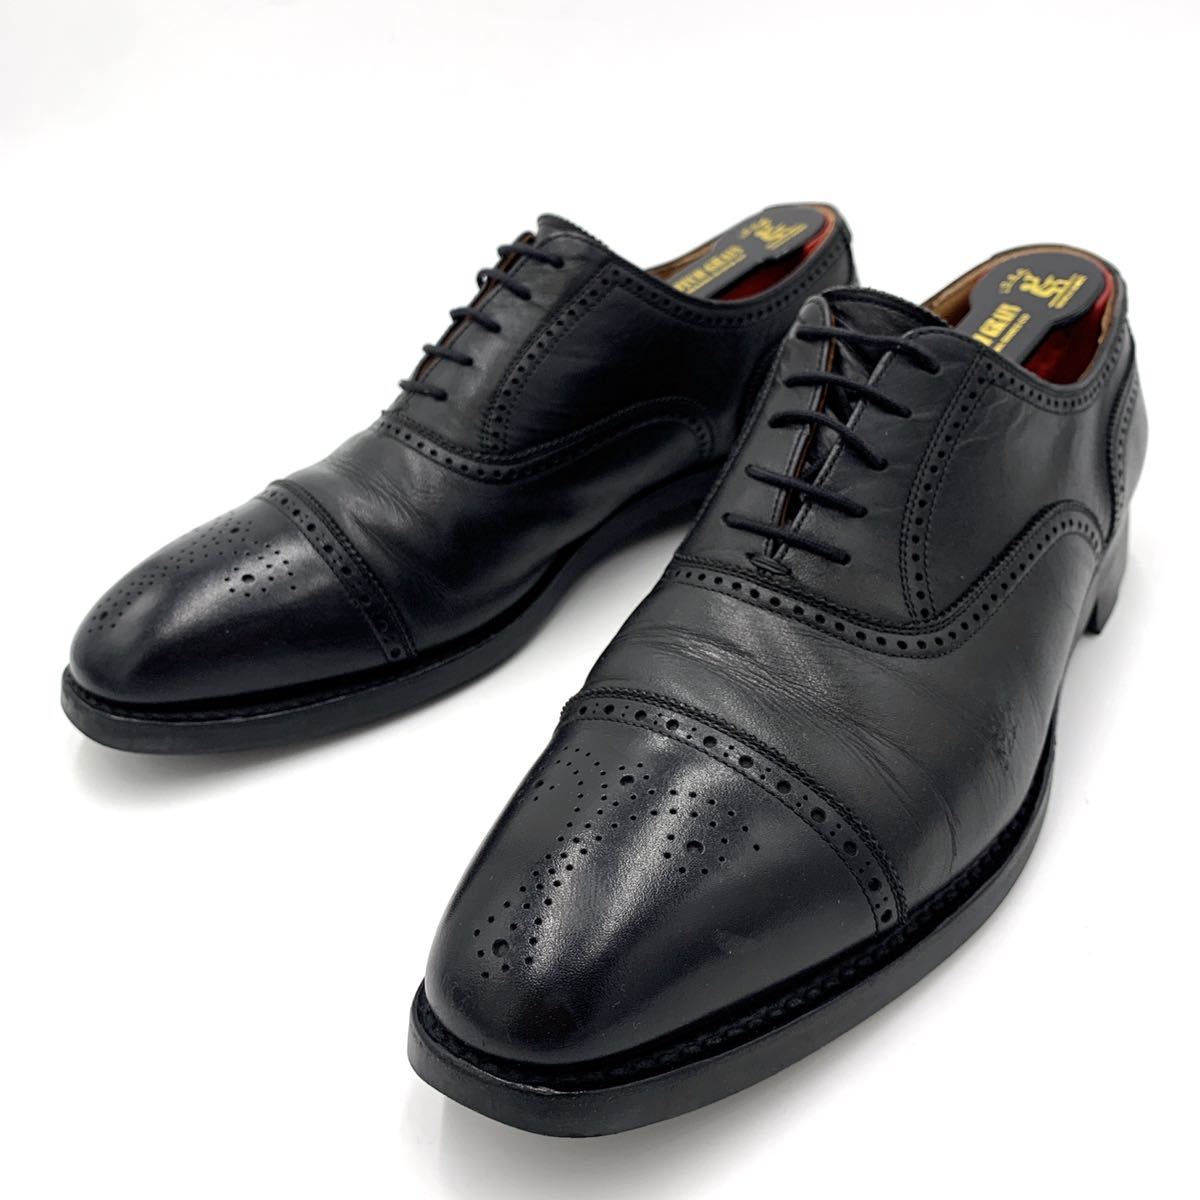 I ＊ 良品 日本製 '高級紳士靴' SCOTCH GRAIN スコッチグレイン 本革 ストレートチップ 内羽根式 ビジネスシューズ 革靴 25.5cm メダリオン